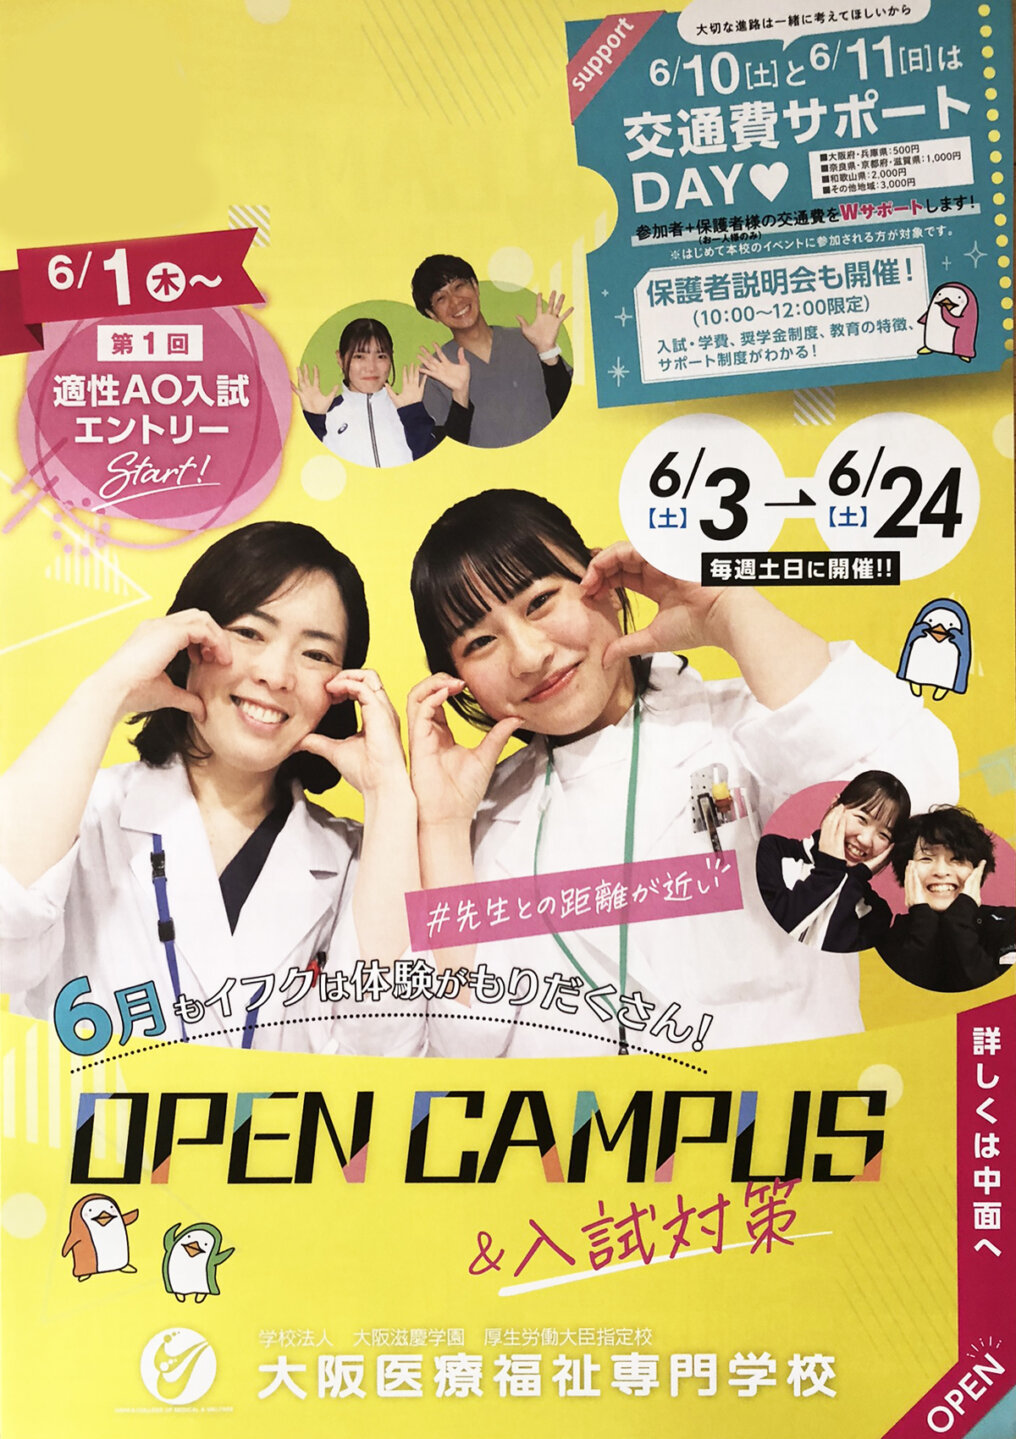 大阪医療福祉専門学校オープンキャンパス